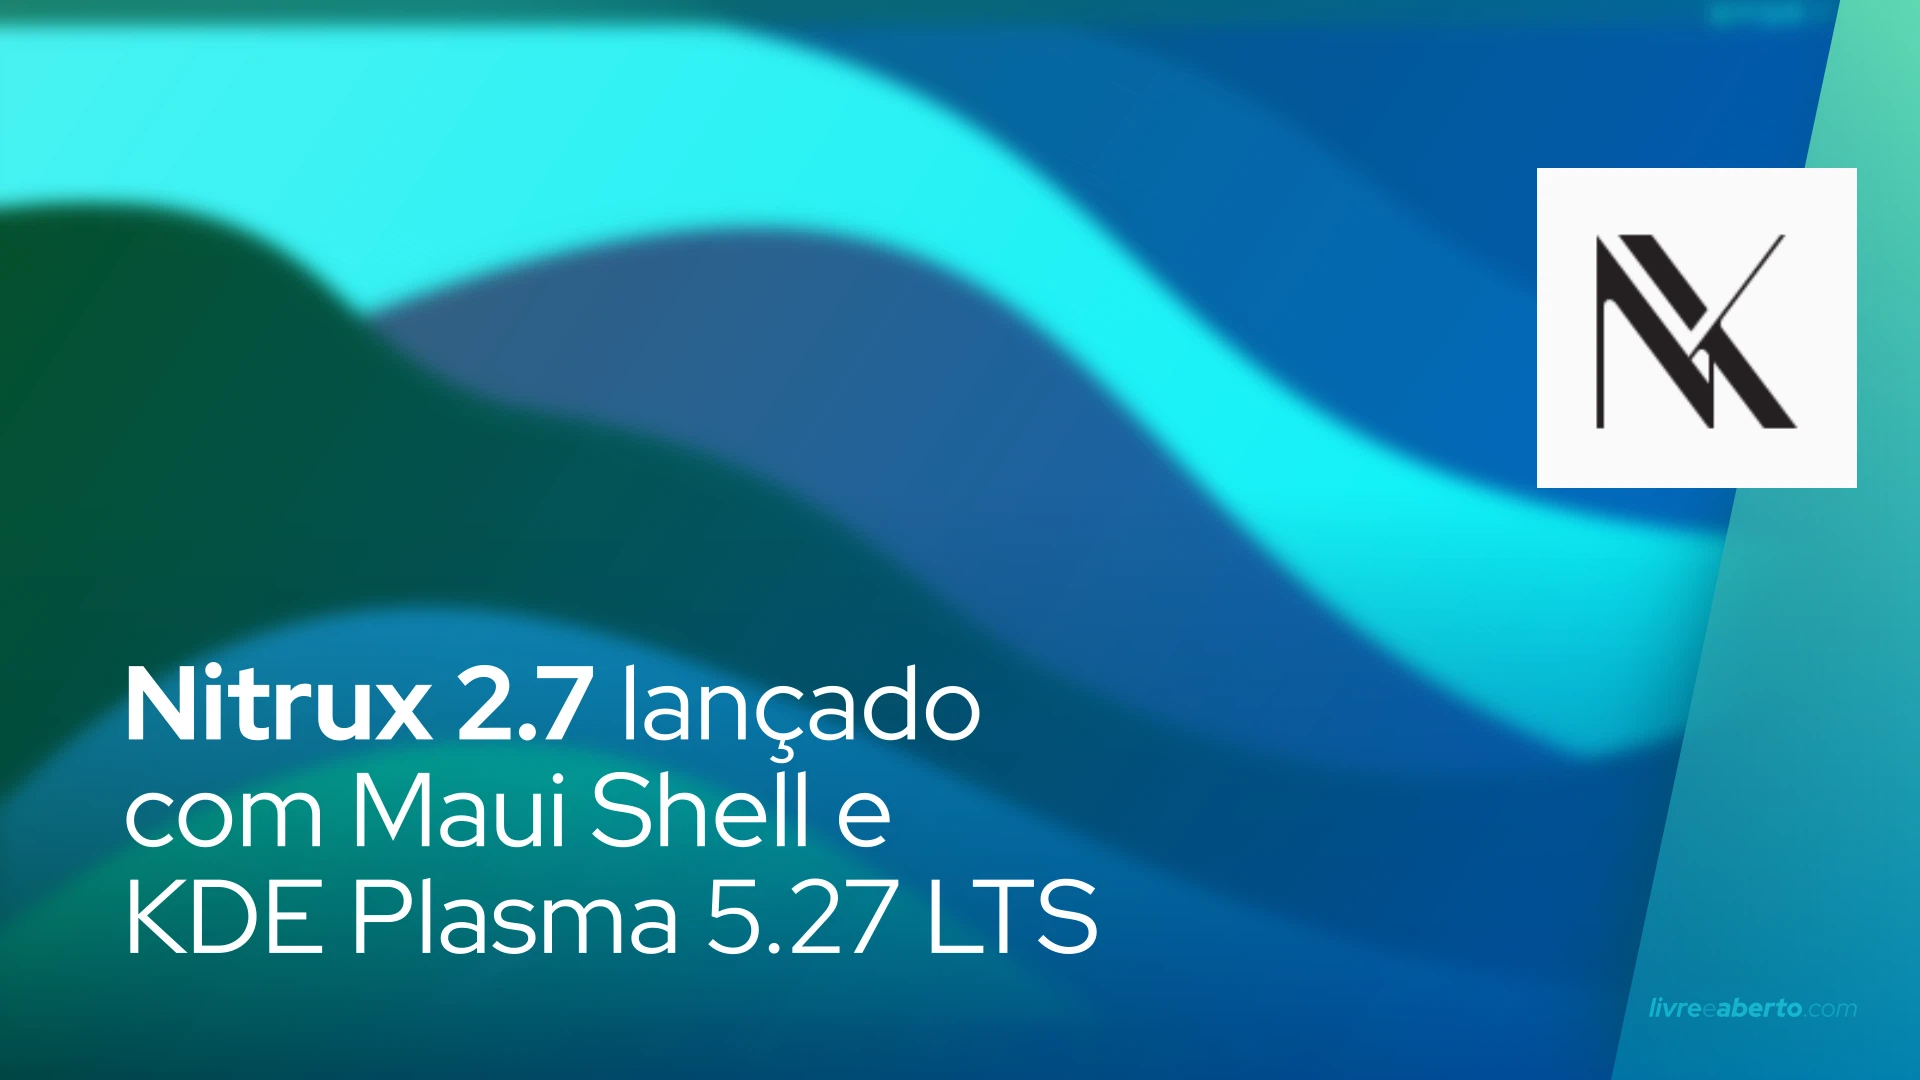 Nitrux 2.7 lançado com Maui Shell e KDE Plasma 5.27 LTS